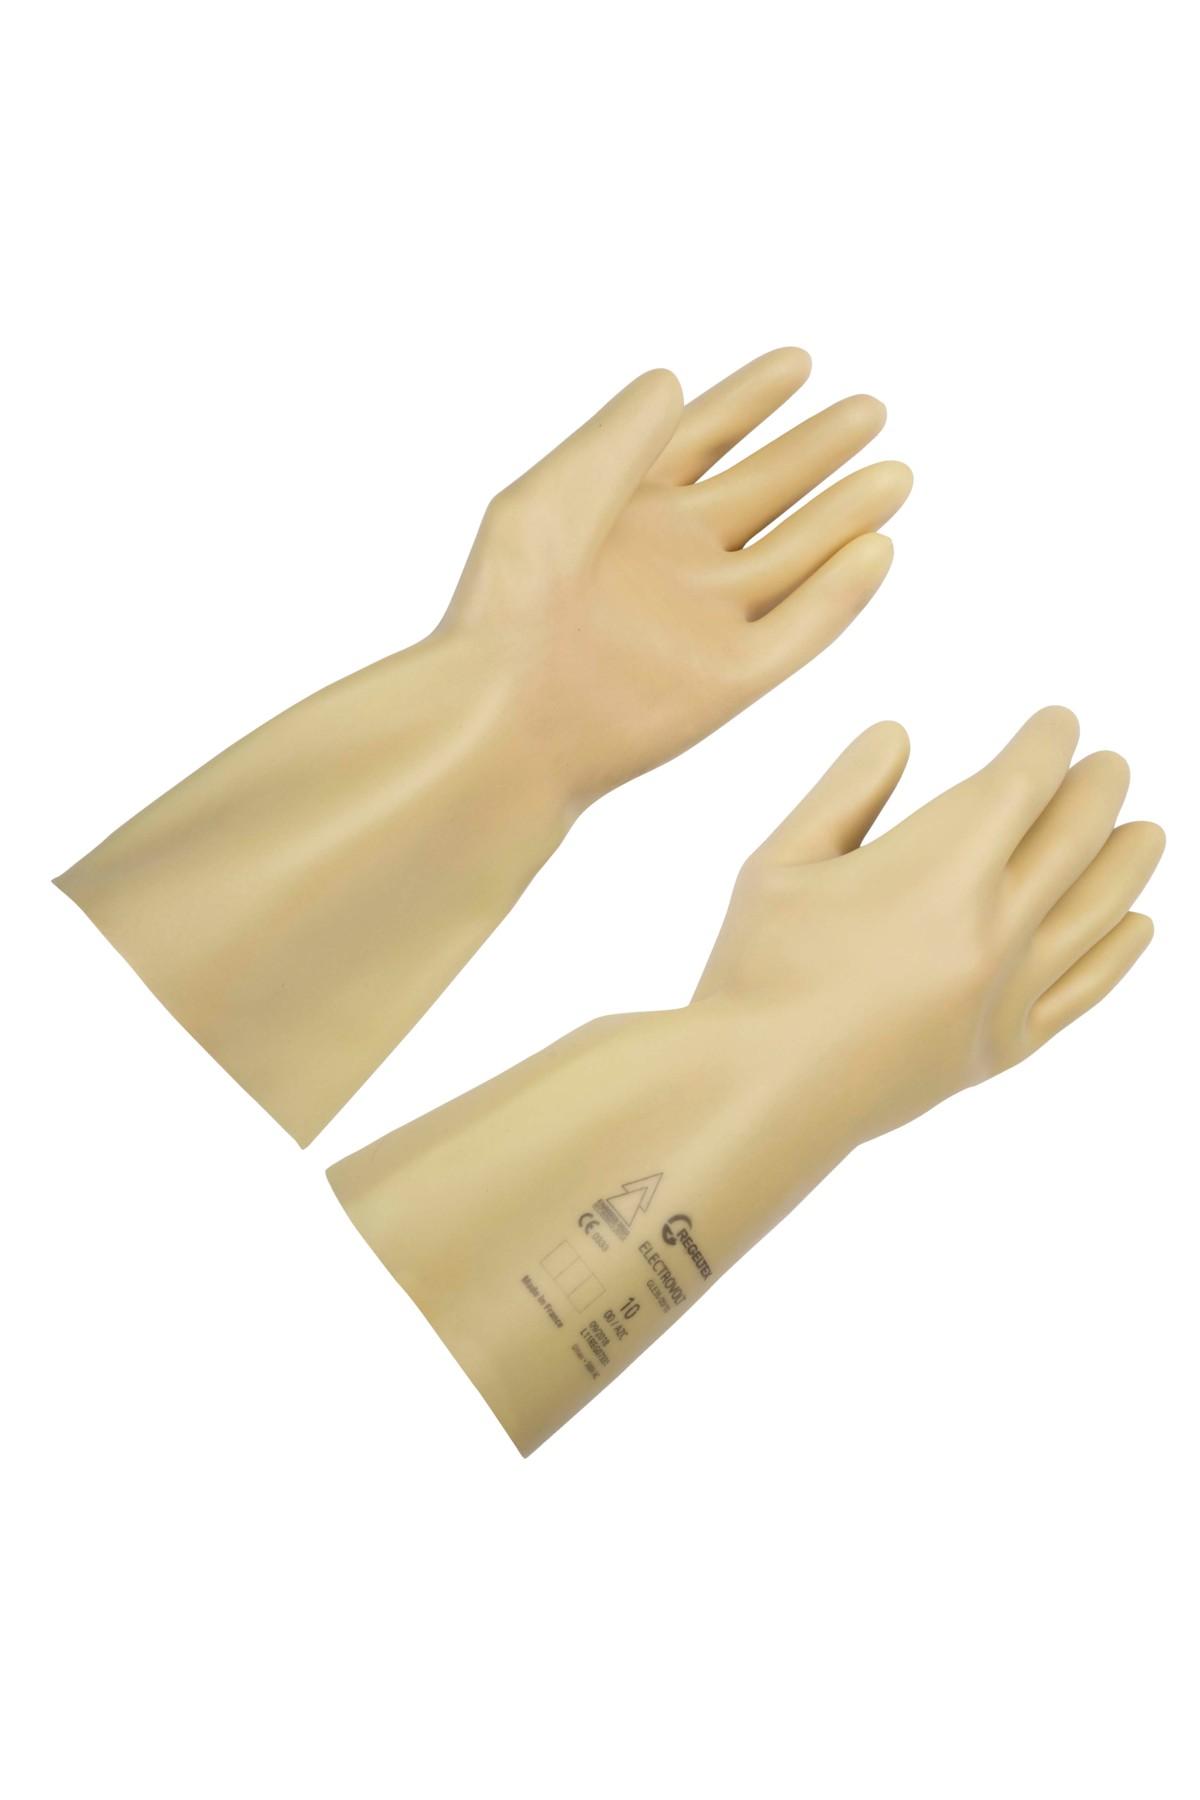 Insulated glove class 0